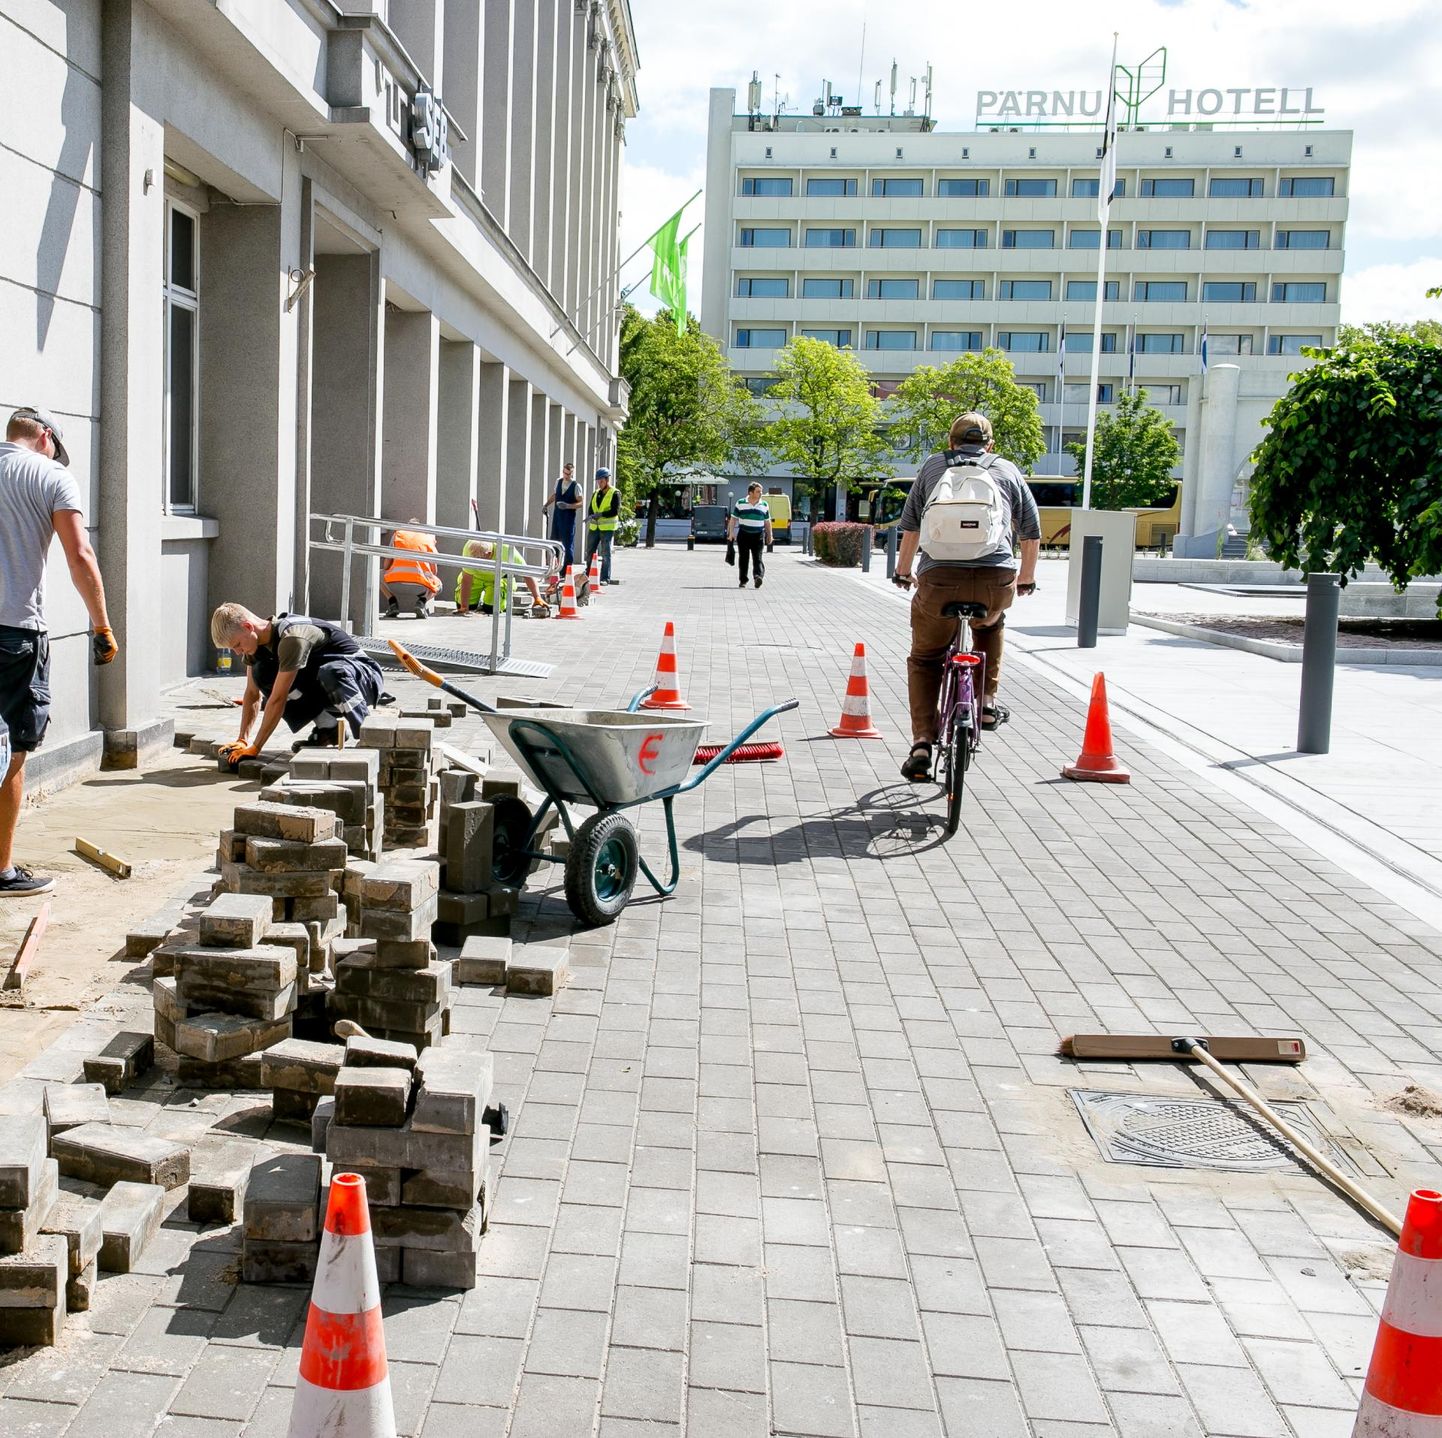 Ehitusmehed hiljuti valminud Rüütli platsil uuesti tänavakive paigaldamas ja teisi puudujääke likvideerimas.